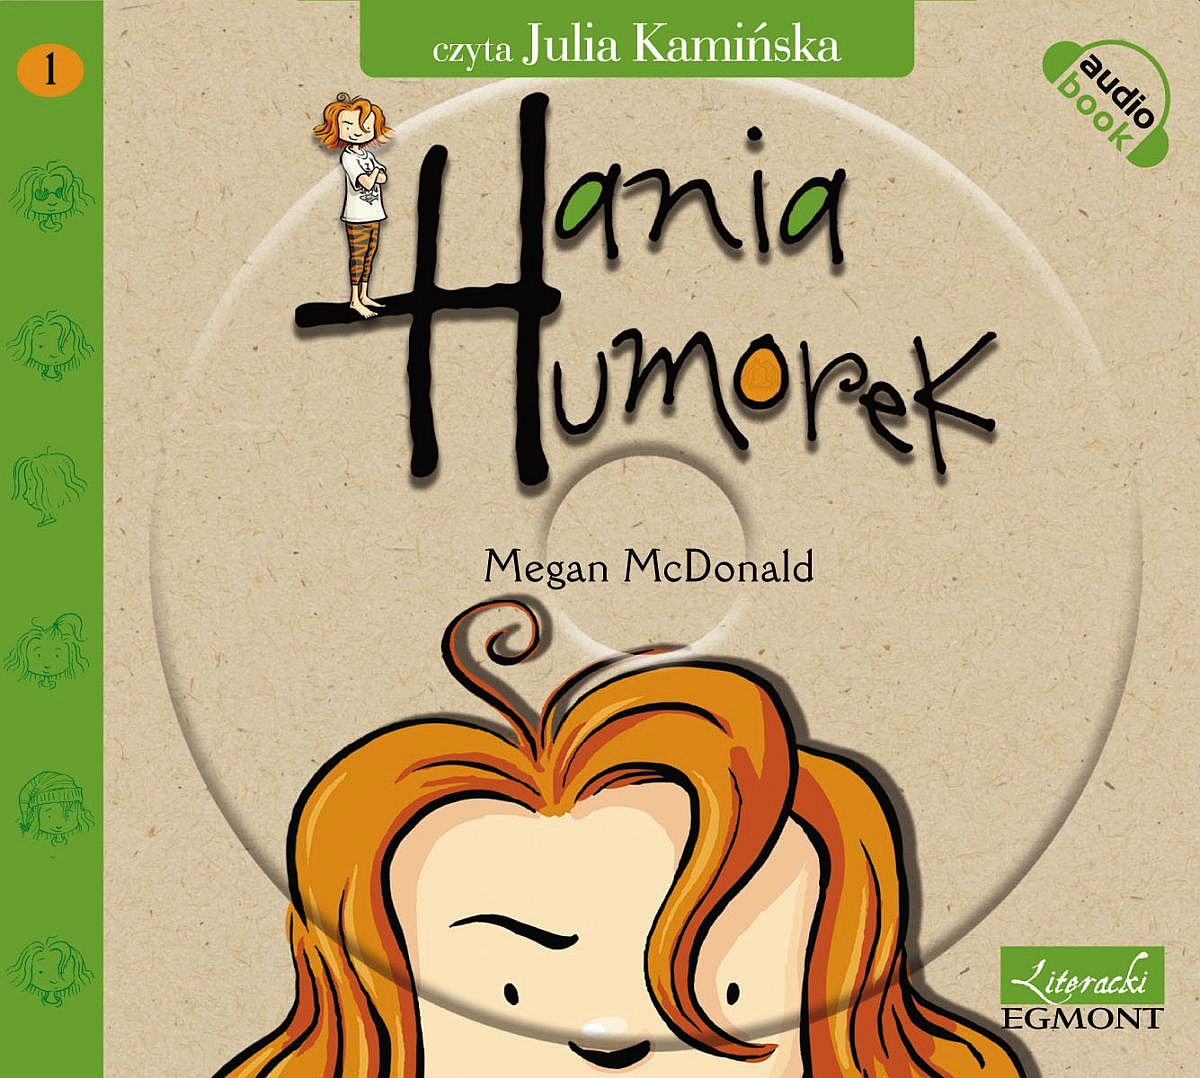 McDONALD MEGAN – HANIA HUMOREK 1. HANIA HUMOREK